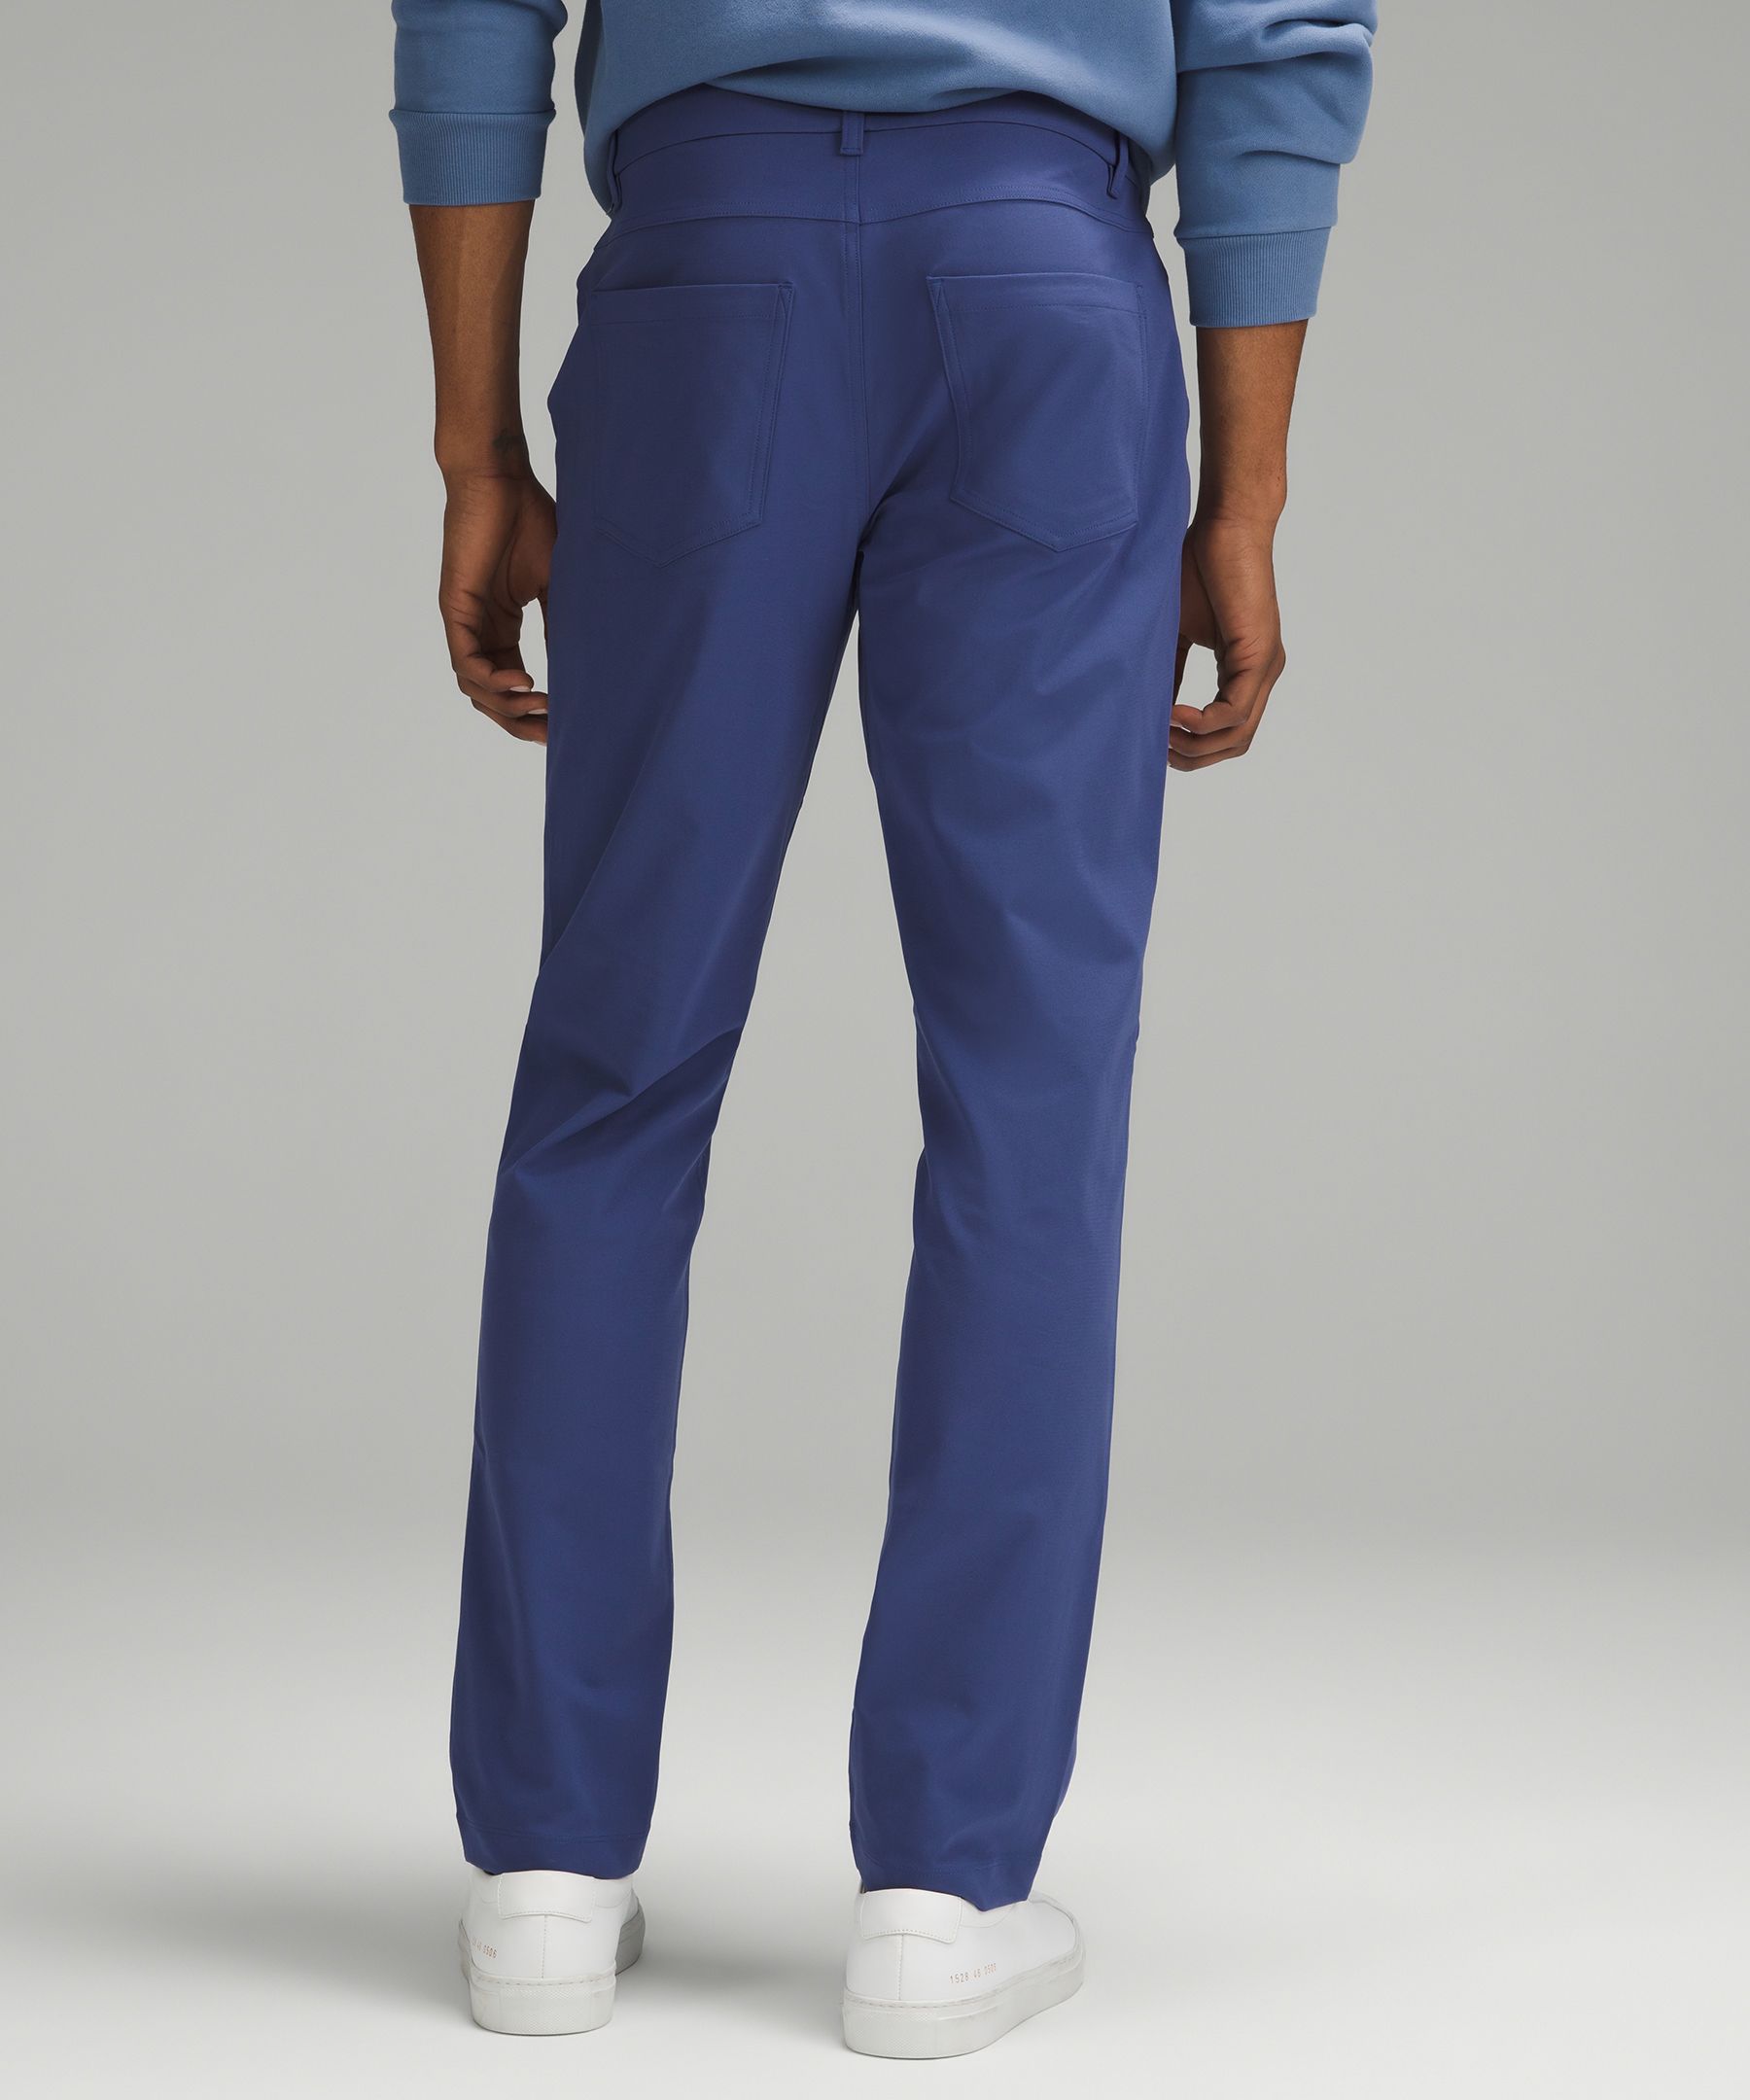 Lululemon ABC Classic Fit Trouser Pant Nomad Men Size 32”W X 32”L